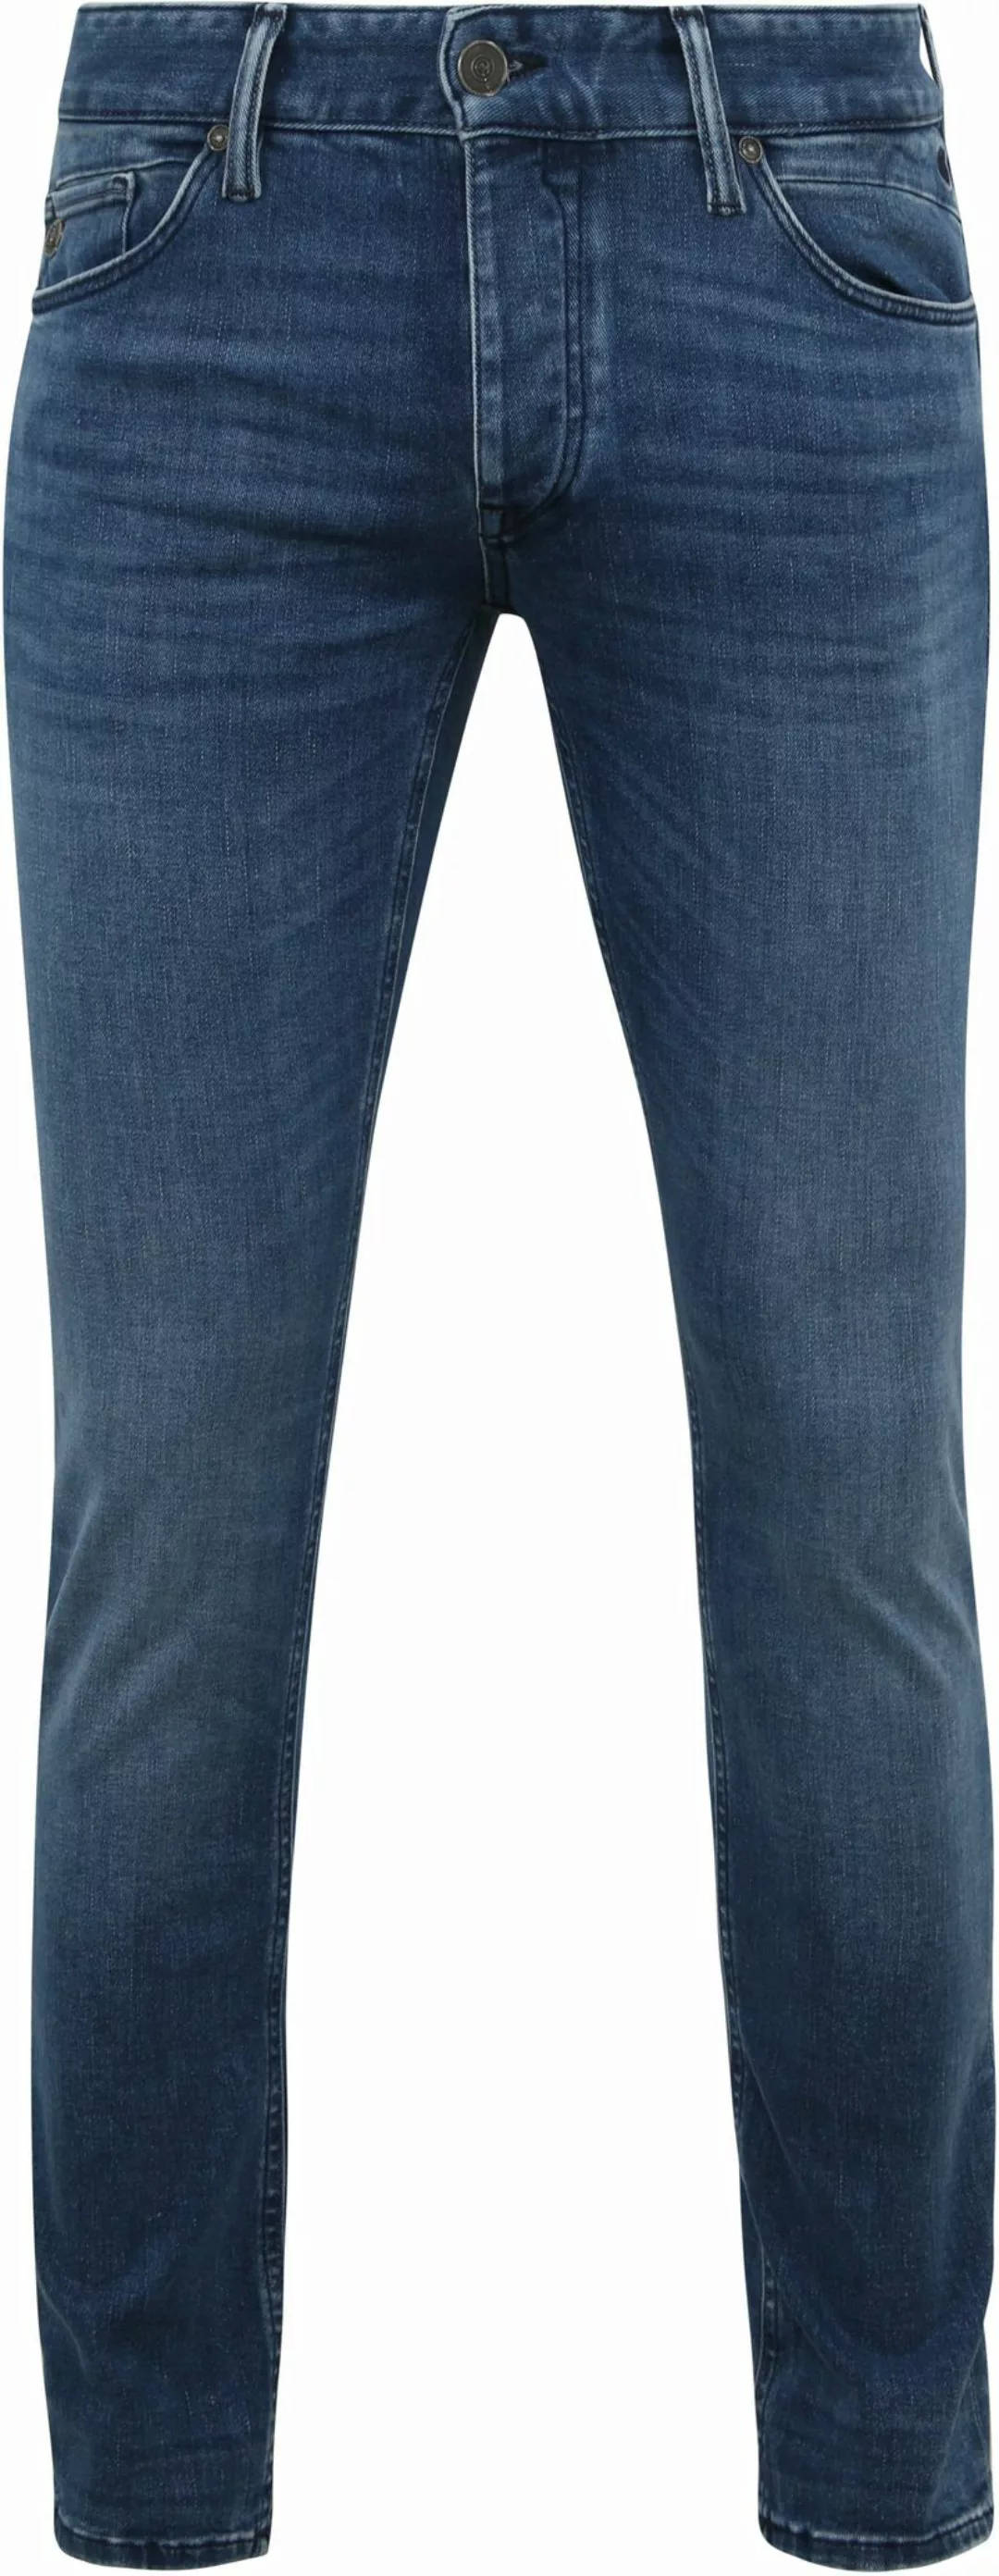 Cast Iron Riser Jeans Blau IIW - Größe W 33 - L 32 günstig online kaufen